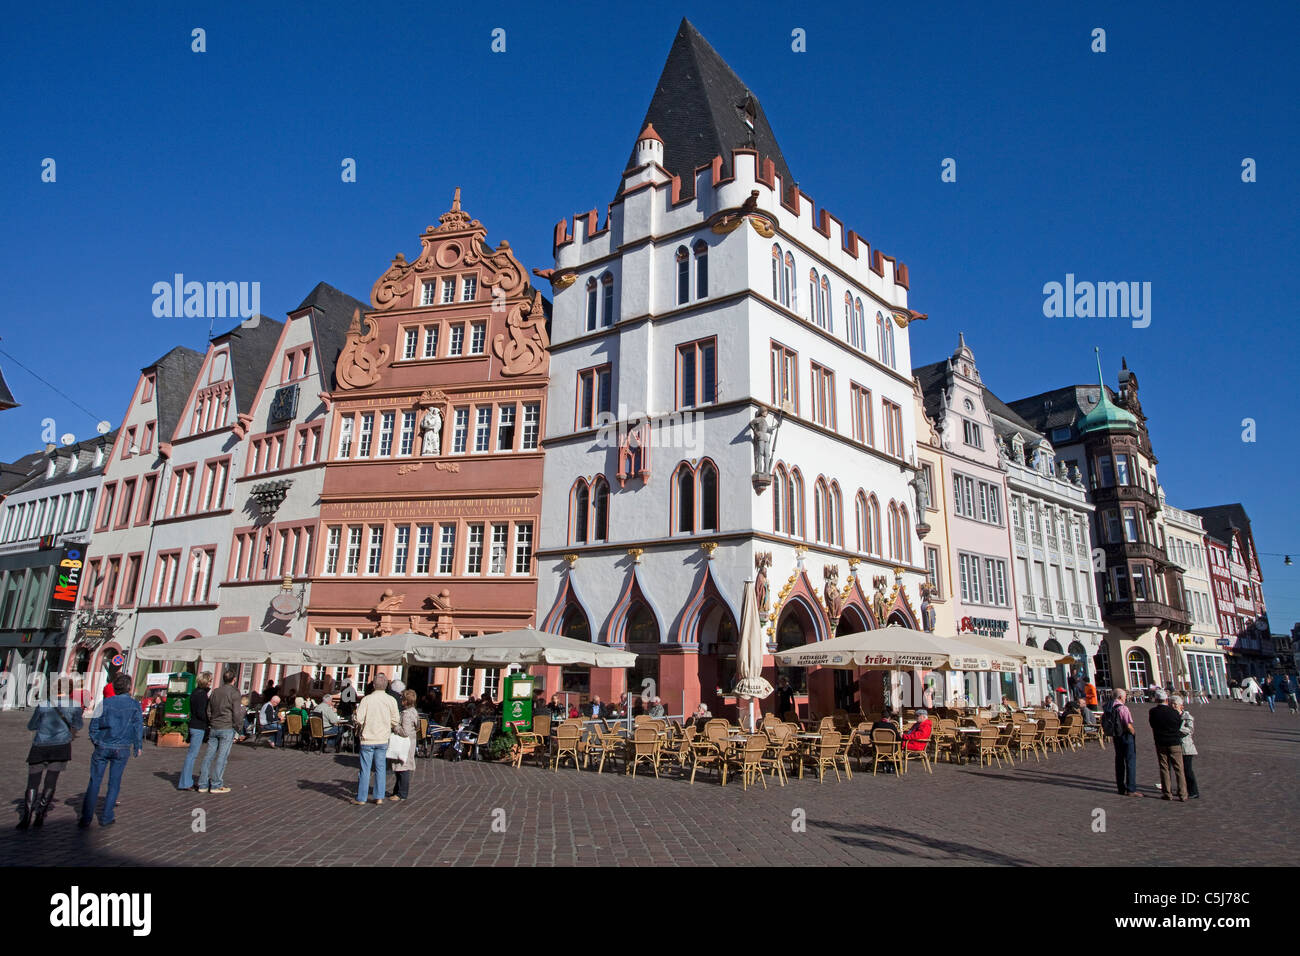 Hauptmarkt von Trier, Ratskeller, vincula das rote Haus,Tréveris, mercado principal, Trier Foto de stock